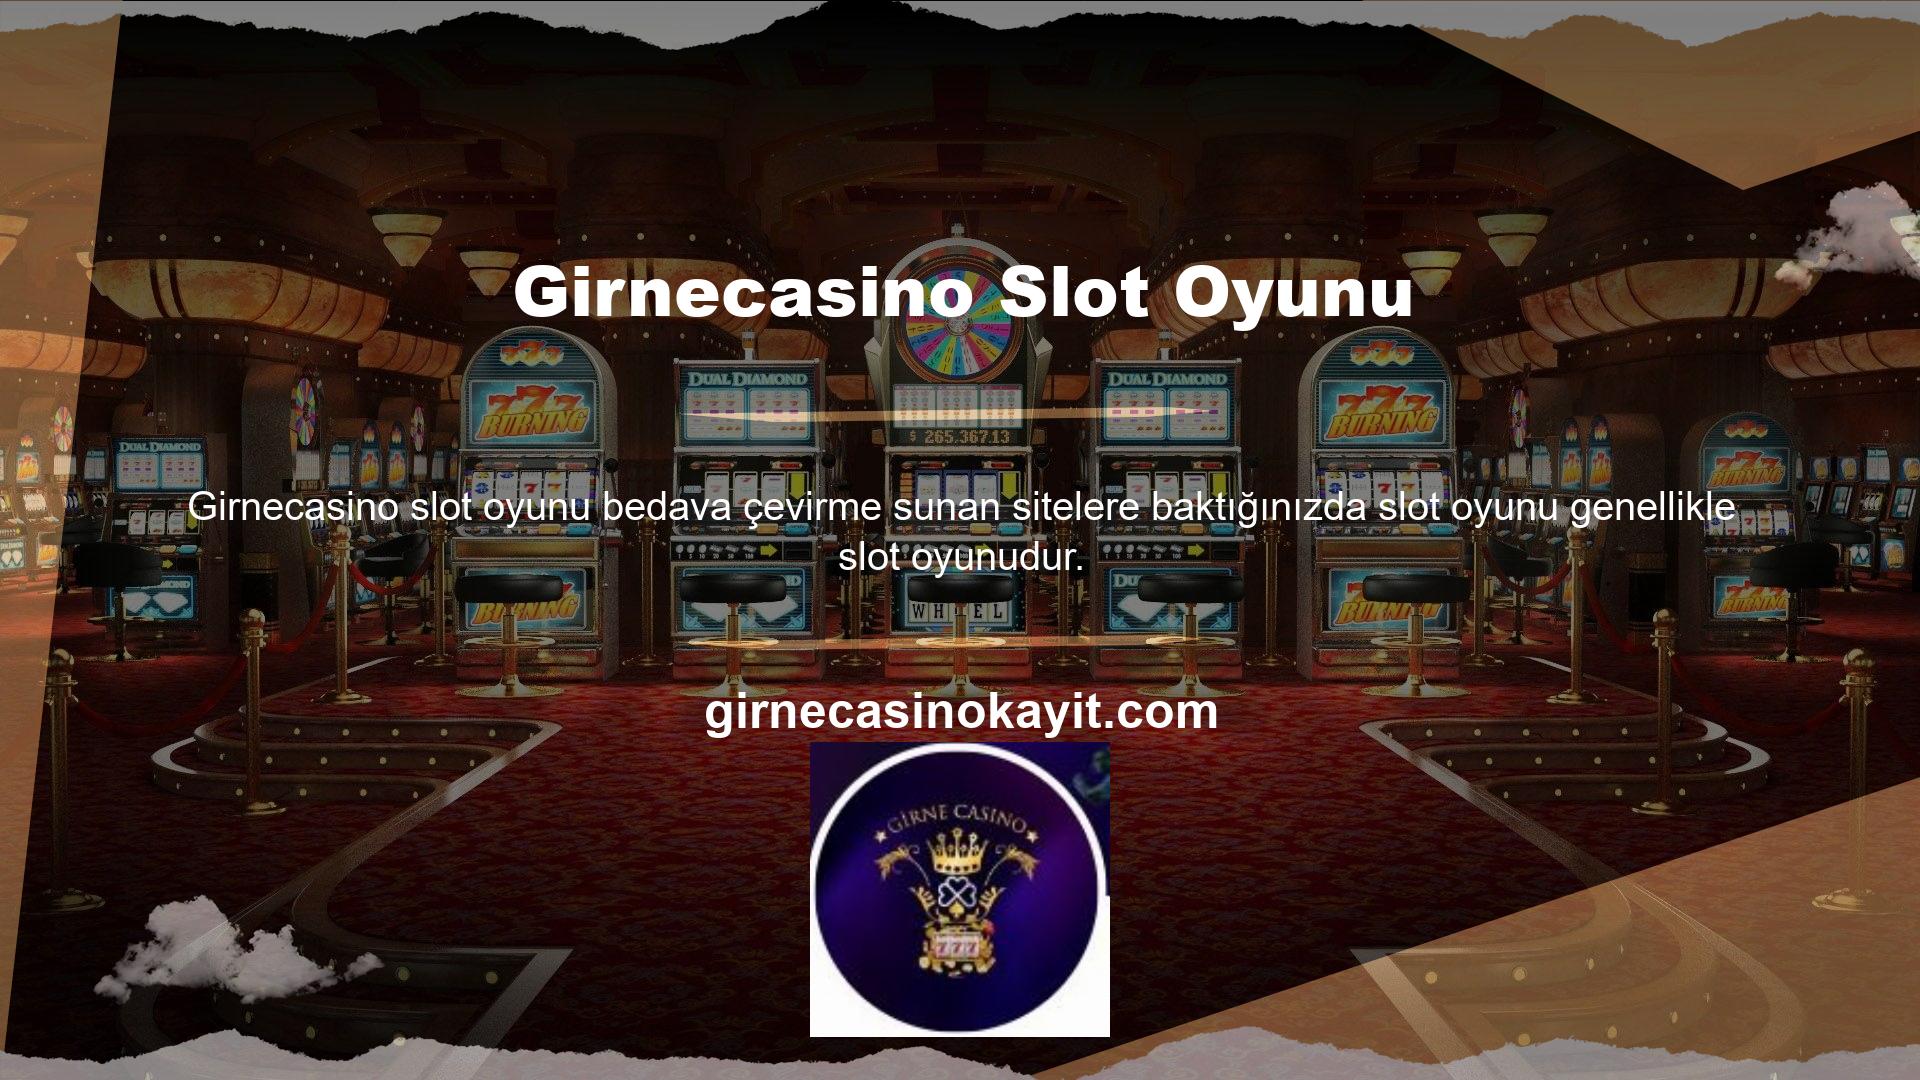 Oyun, Girnecasino ücretsiz slot bahis tanıtım web sitesine taşındı